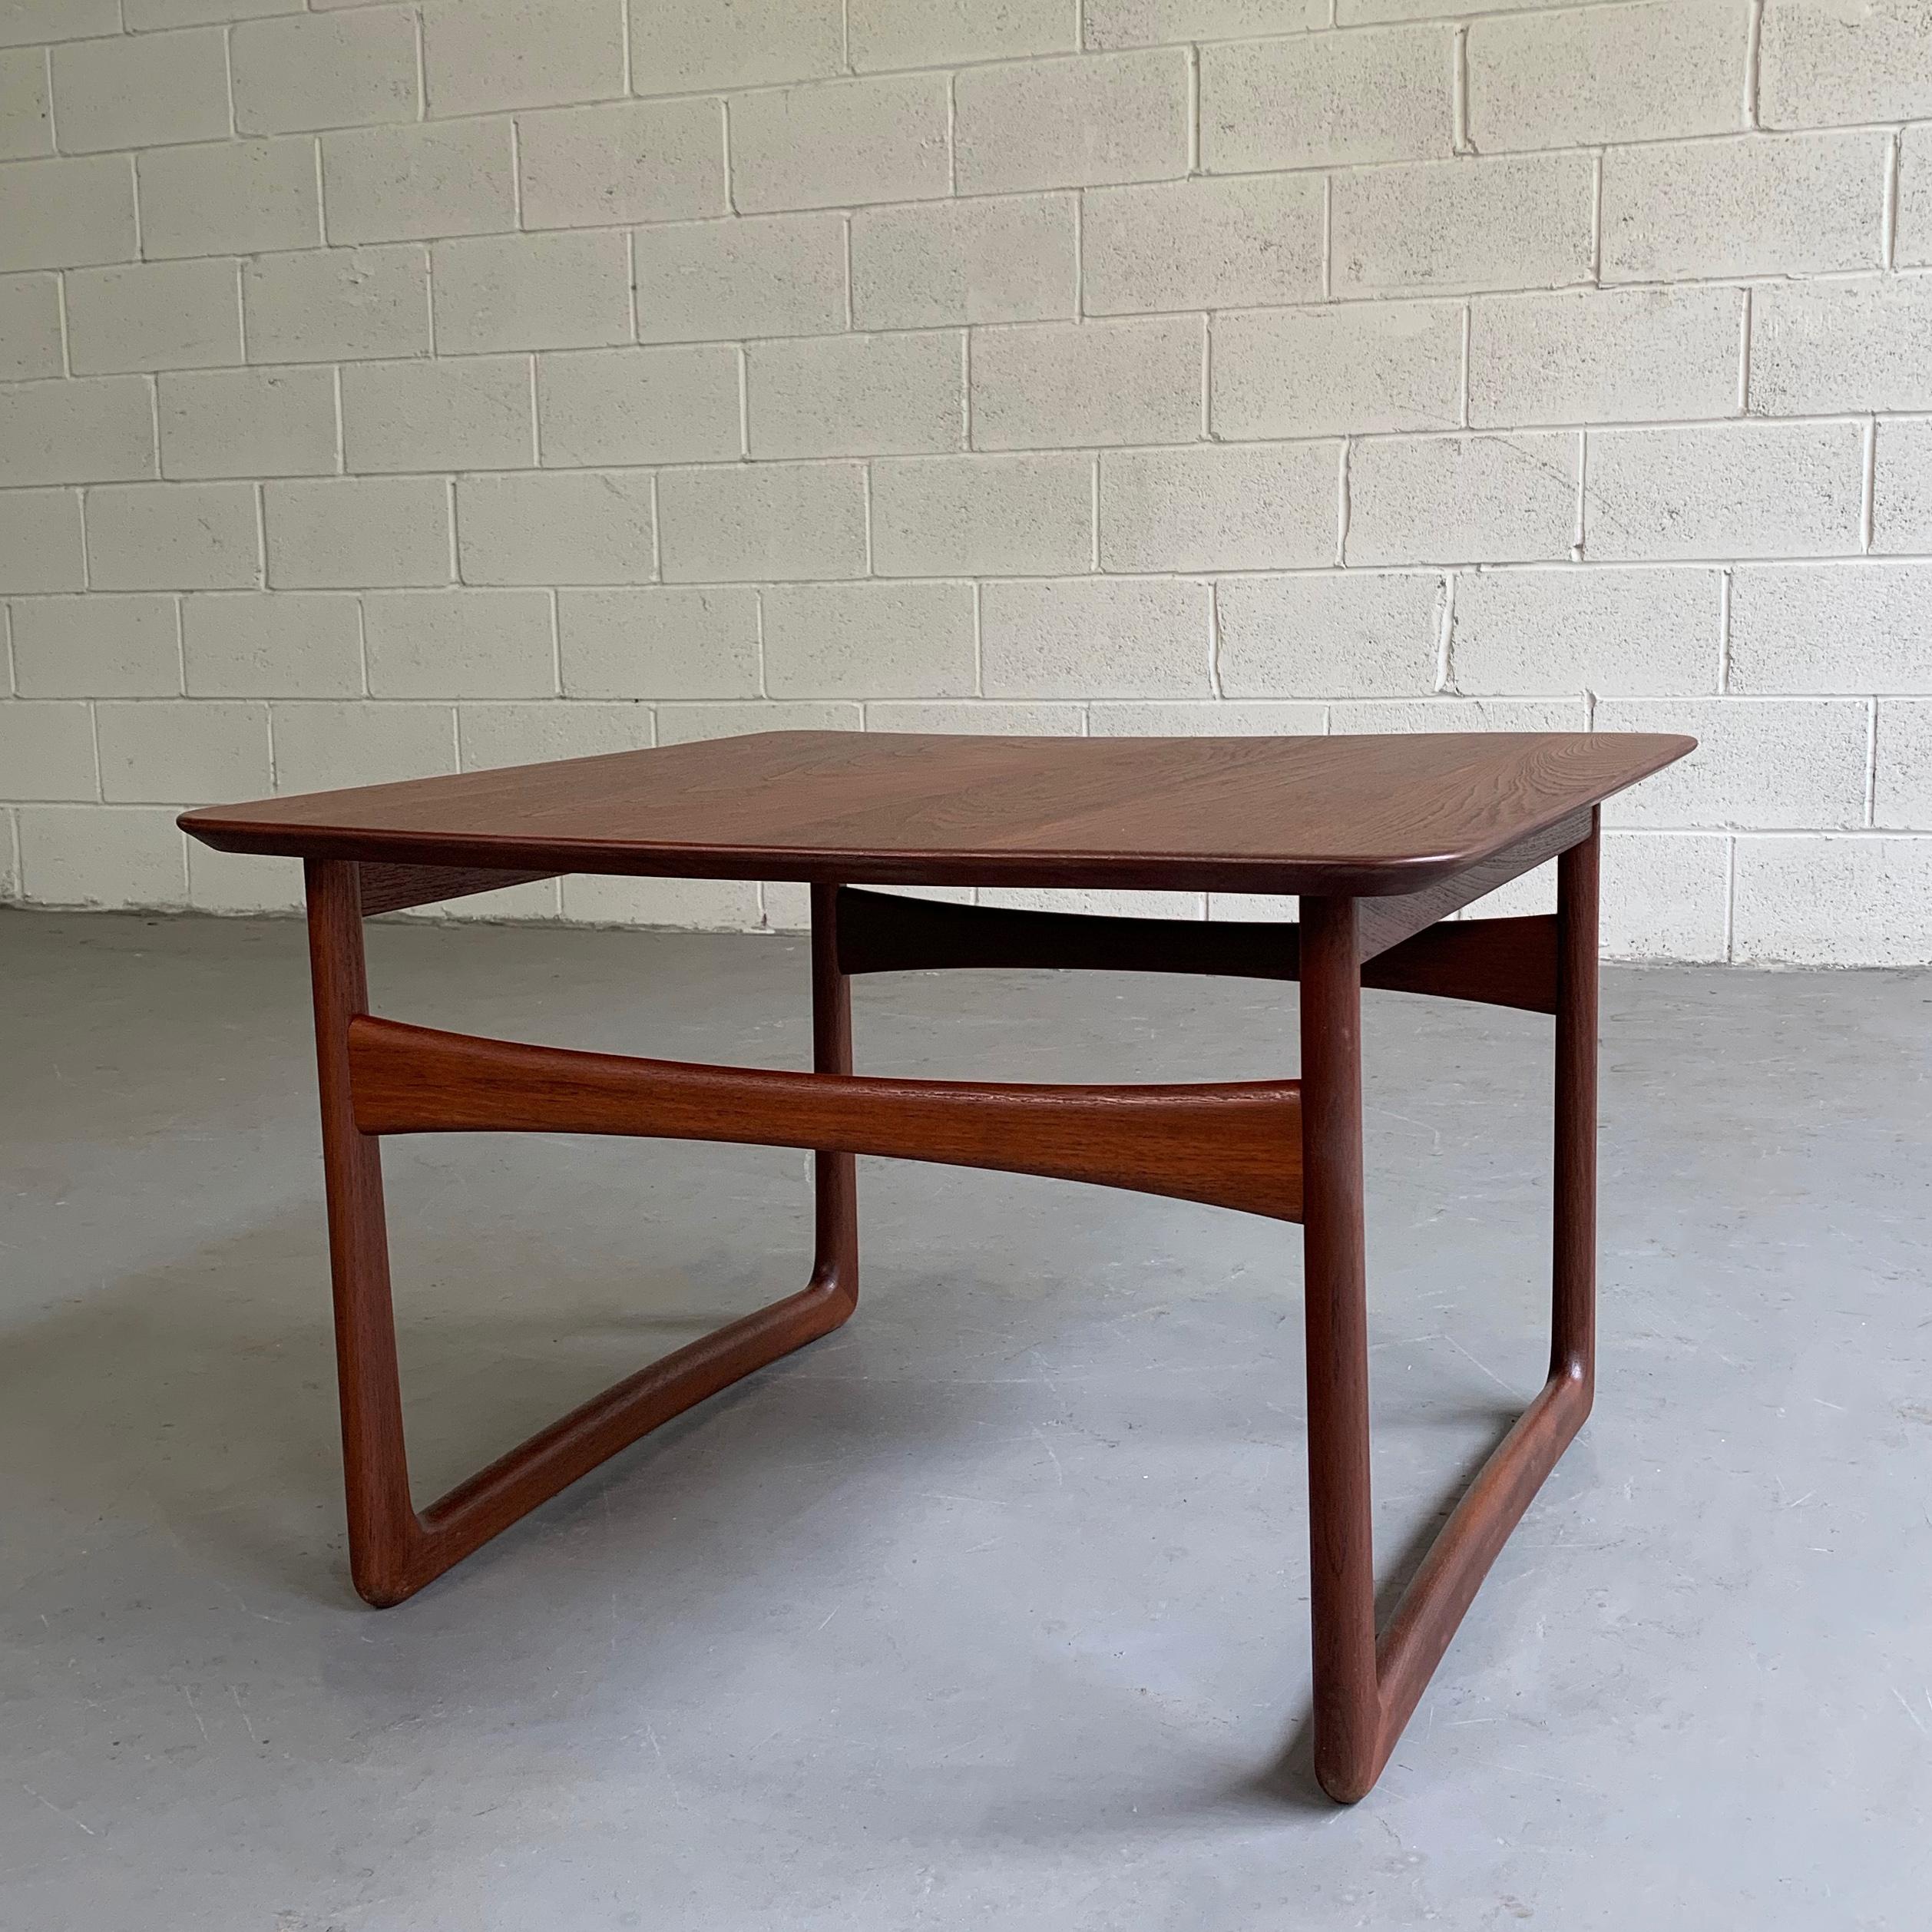 L'élégante table d'appoint en teck de Peter Hvidt & Orla Mølgaard-Nielsen, vendue par John Stuart, présente des pieds en forme de traîneau qui sont intéressants sous tous les angles. Deux tables sont disponibles.